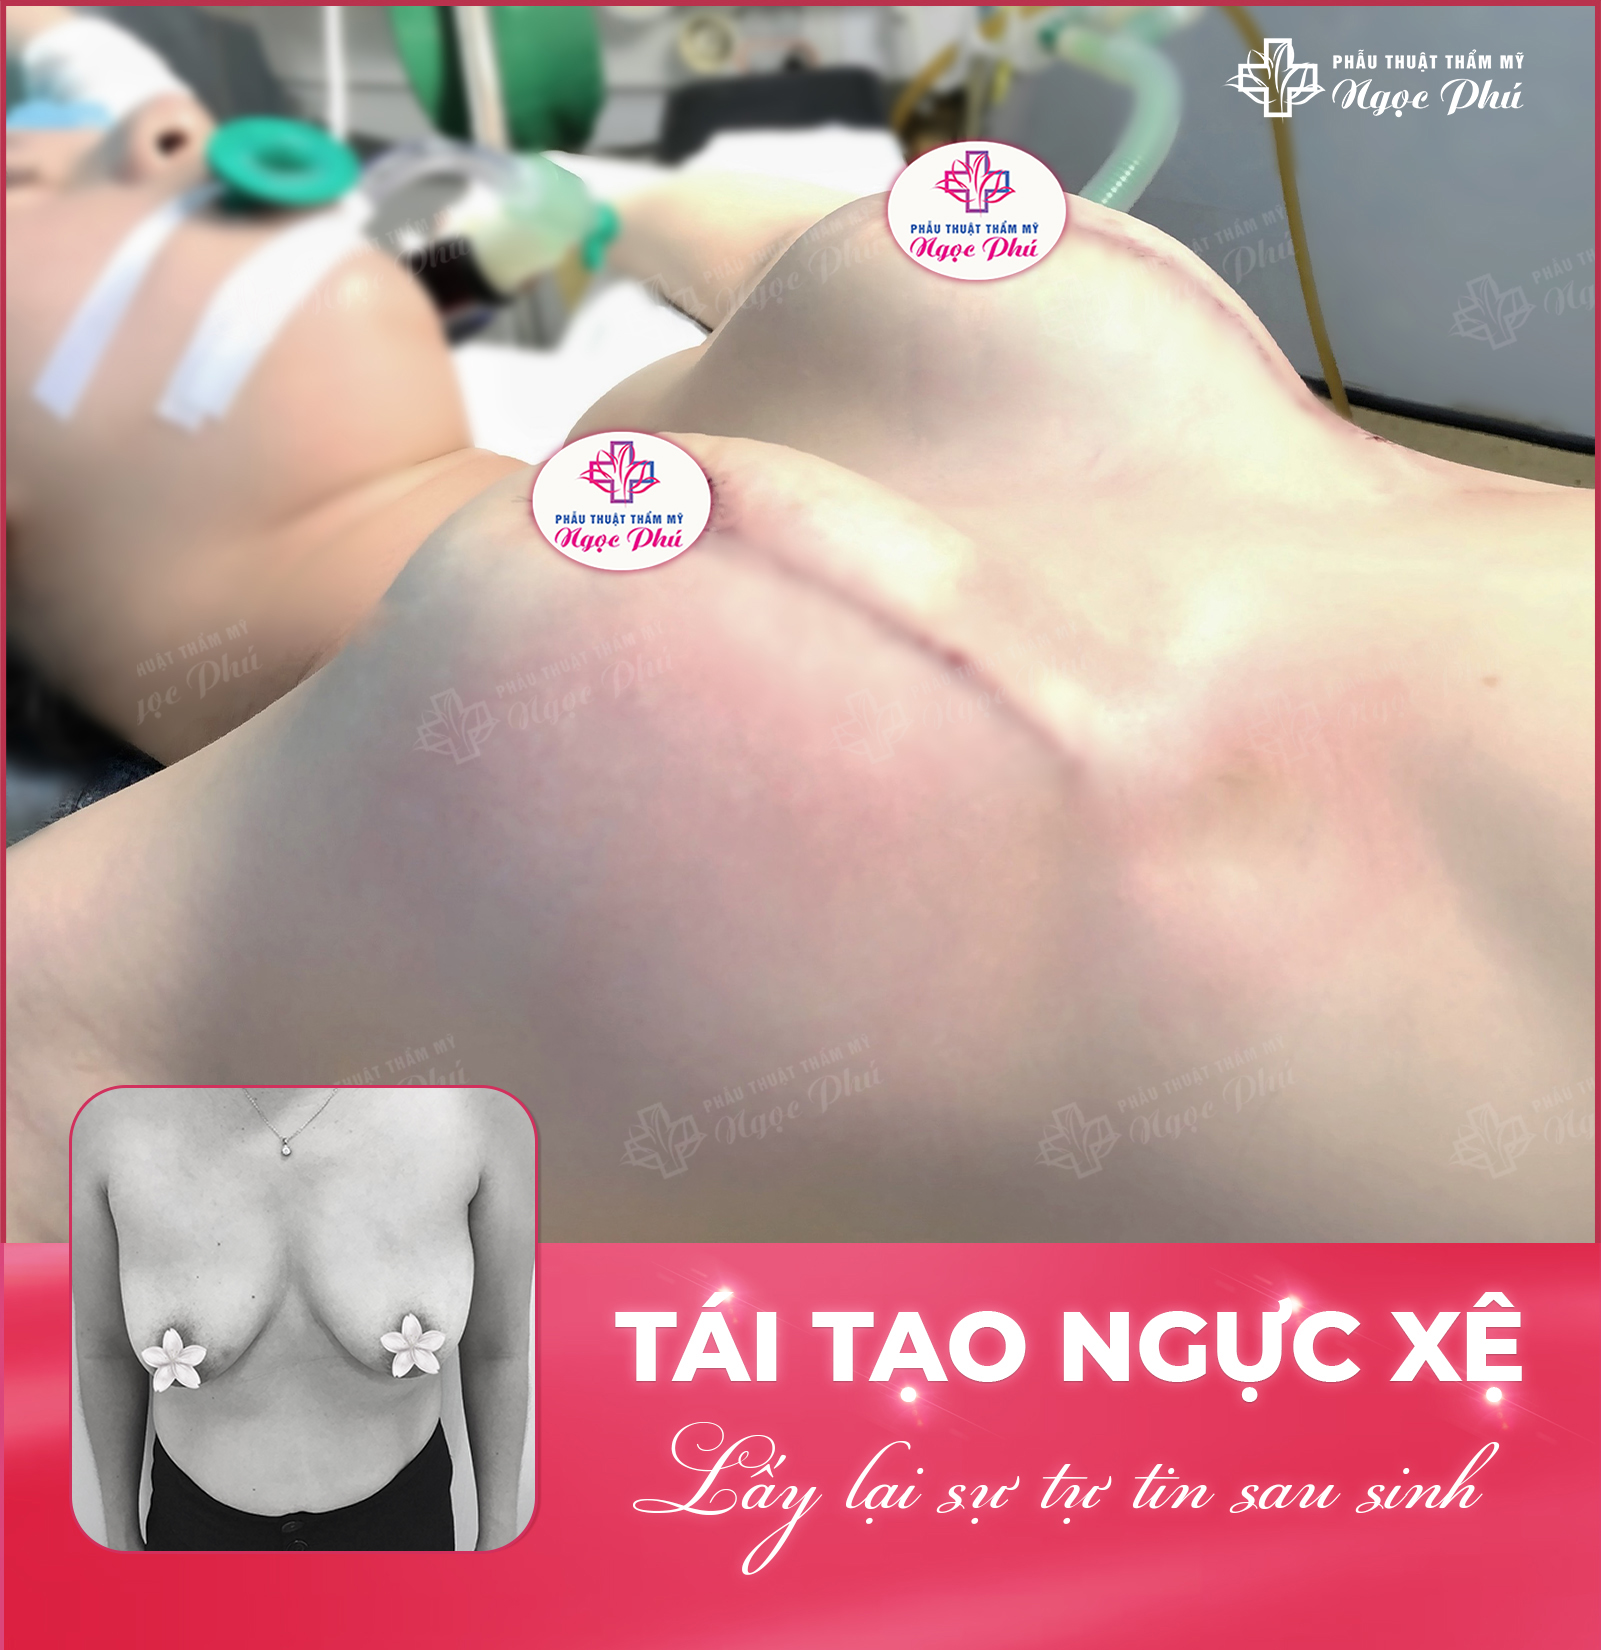 Nâng ngực 6D không chạm tại Thẩm mỹ Ngọc Phú sử dụng túi độn cao cấp, tạo dựng dáng ngực cân đối, hài hòa mà không gây biến chứng về sau.